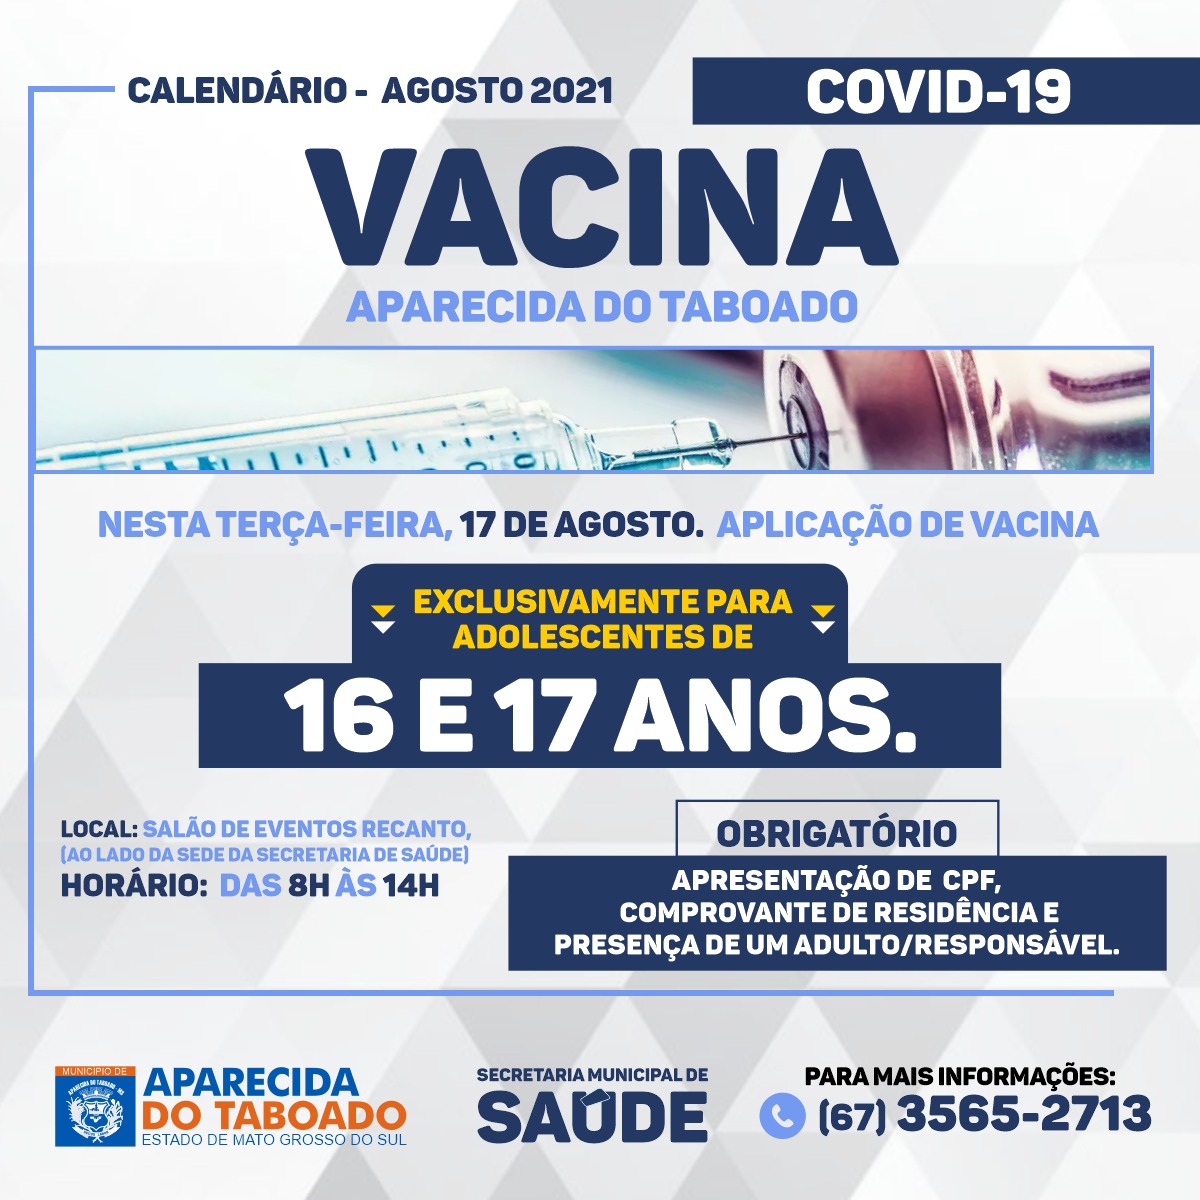 VacinaAdolescente (4)